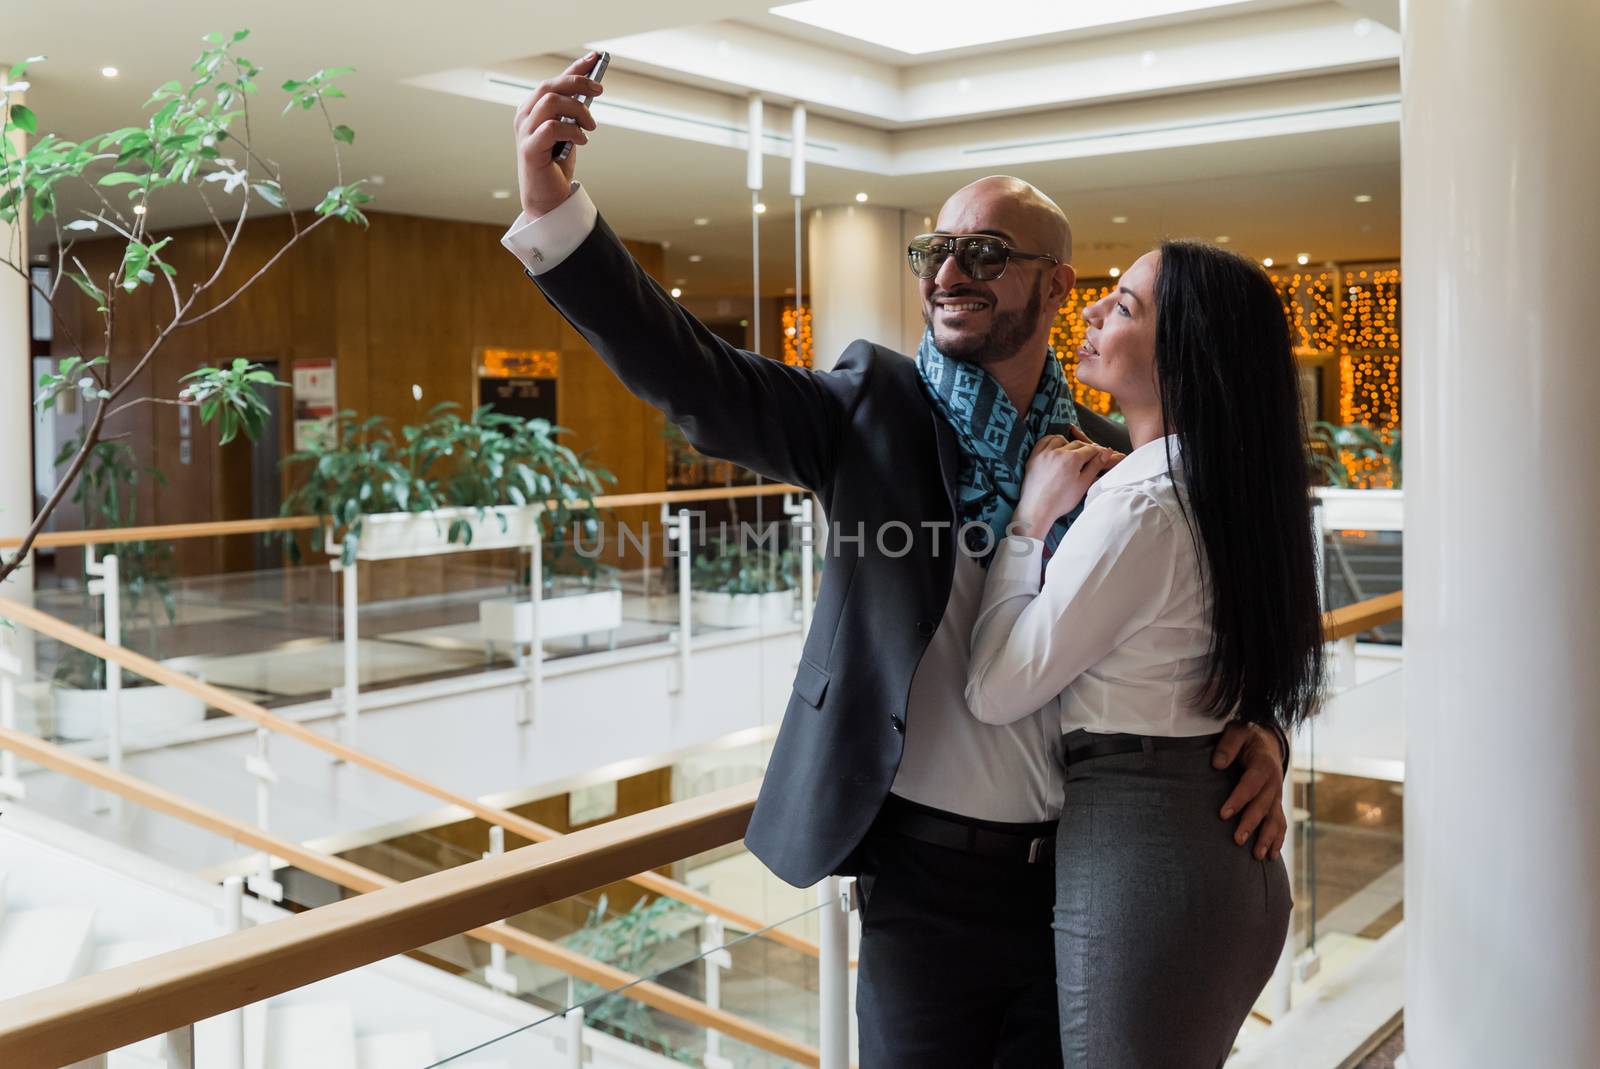 Arab businessman and girl making selfie by vipvn